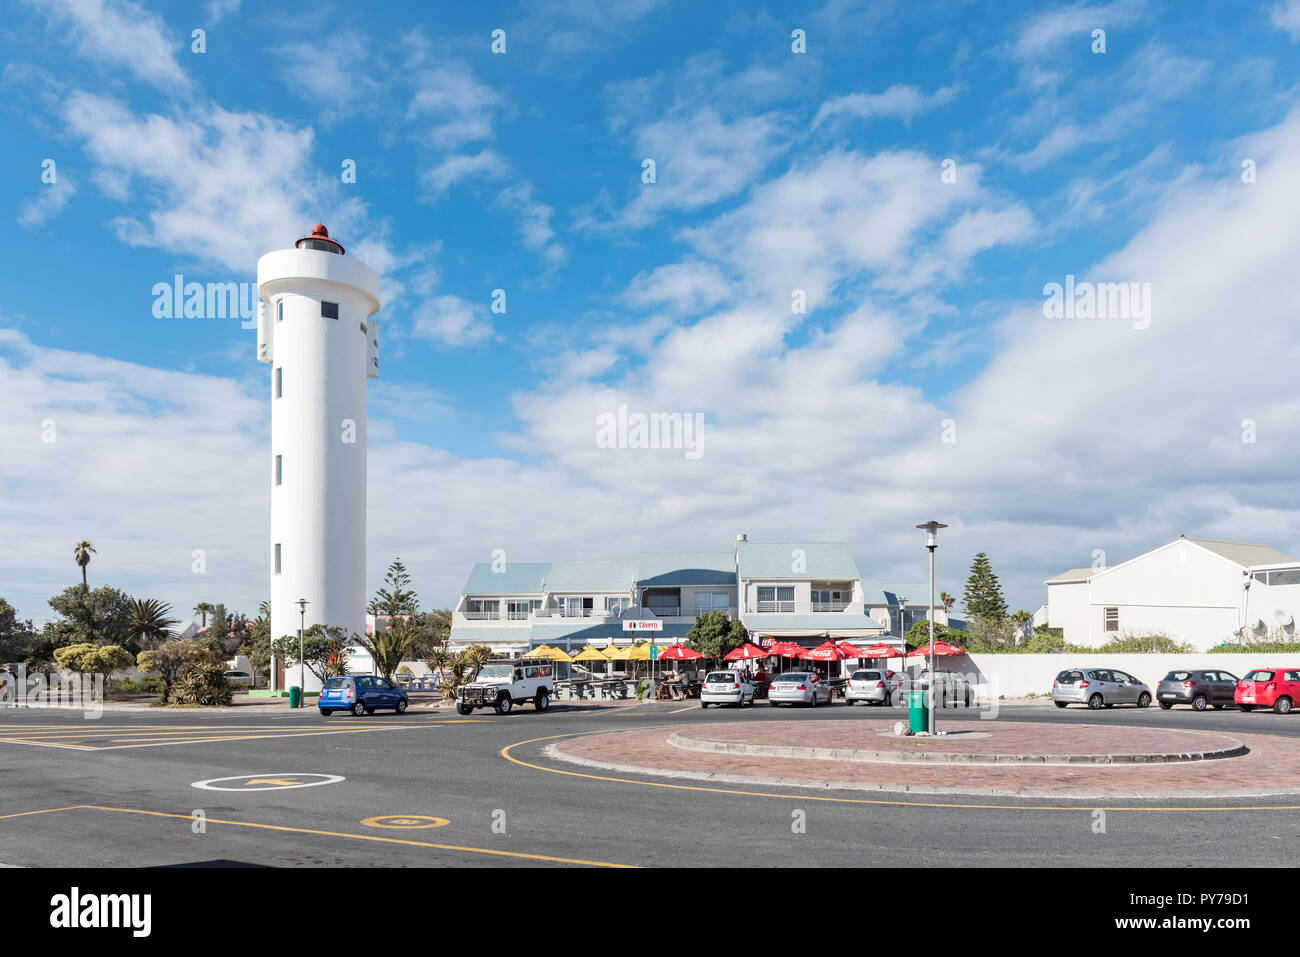 Kapstadt, Südafrika, 14. AUGUST 2018: eine Straßenszene in Milnerton. Der Leuchtturm, ein Restaurant, Menschen und Fahrzeuge sind sichtbar Stockfoto